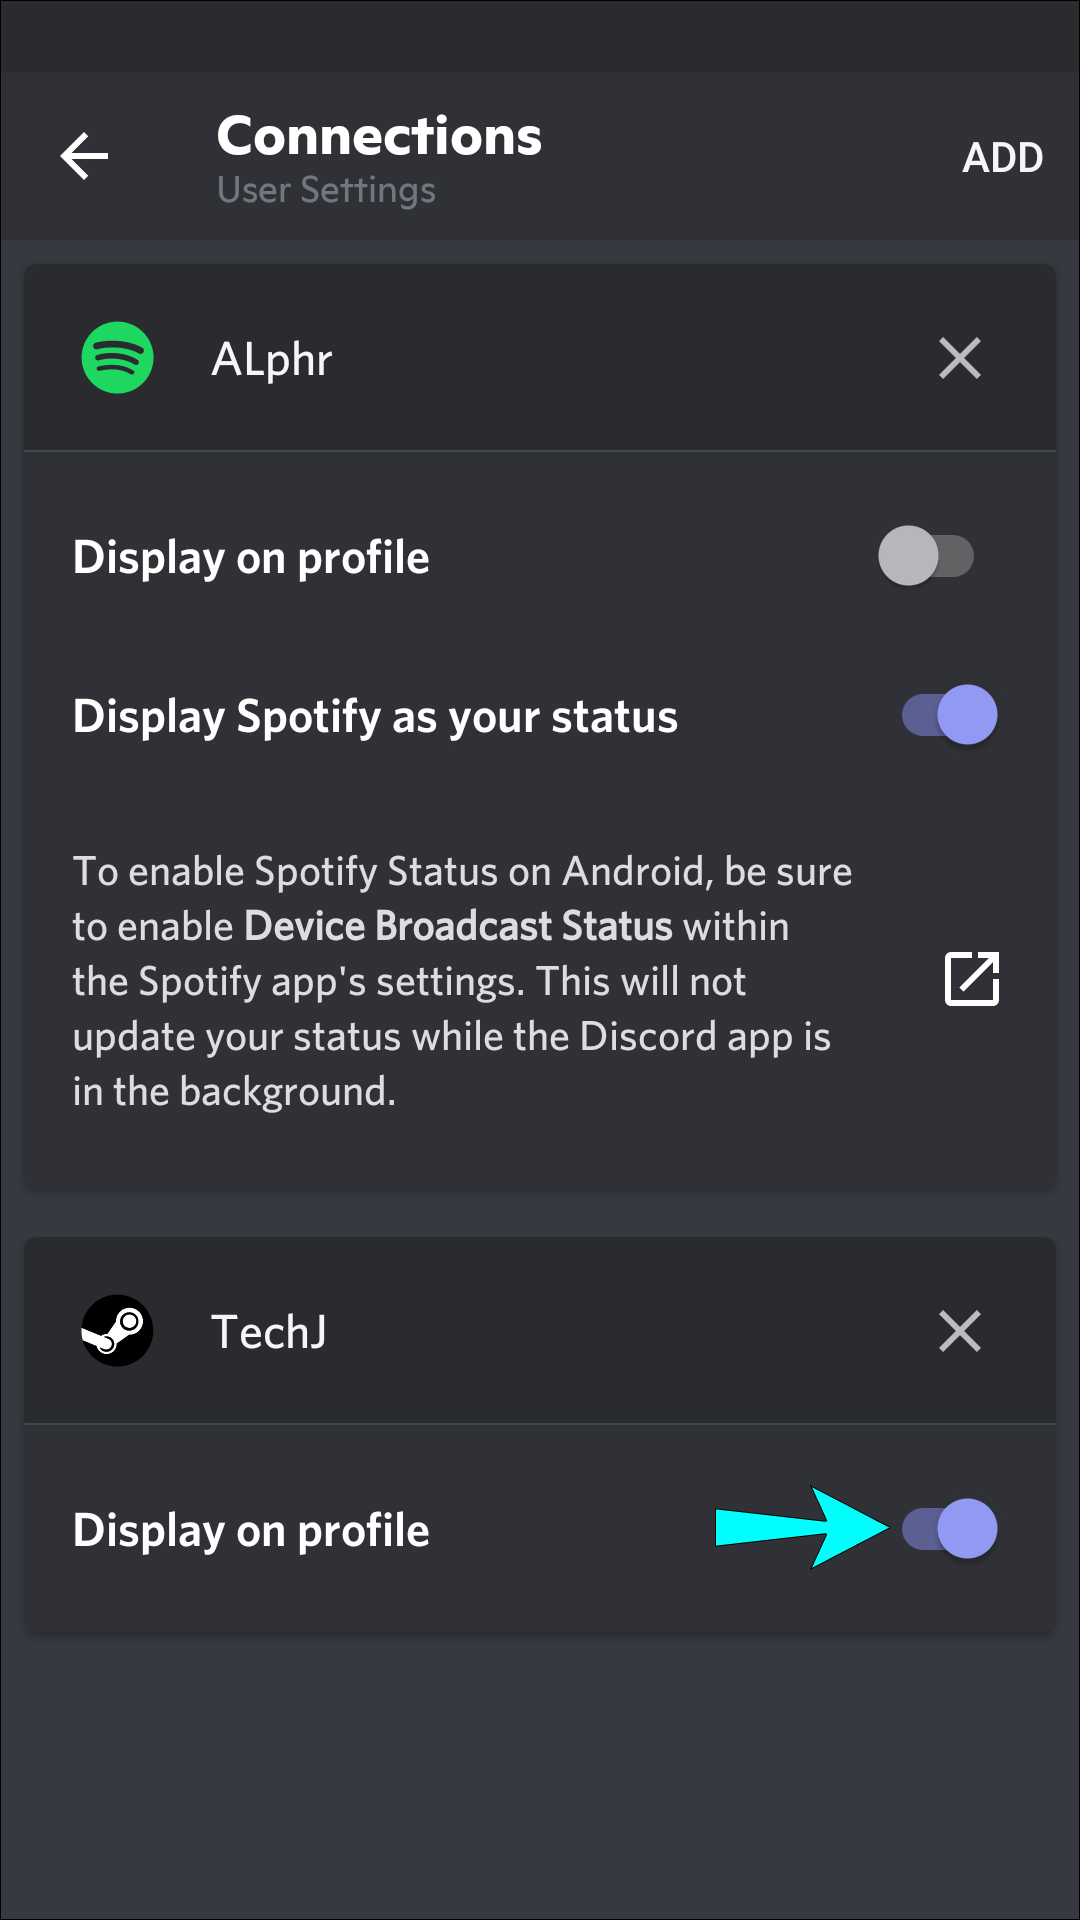 Spotify Discord mang đến cho bạn một nền tảng giải trí đầy đủ những bản nhạc yêu thích của bạn, kết hợp với công nghệ âm thanh tiên tiến và cộng đồng những người yêu nhạc đầy thú vị trên Discord. Cùng trải nghiệm và chia sẻ những khoảnh khắc âm nhạc đắm say nhất cùng với chúng tôi.